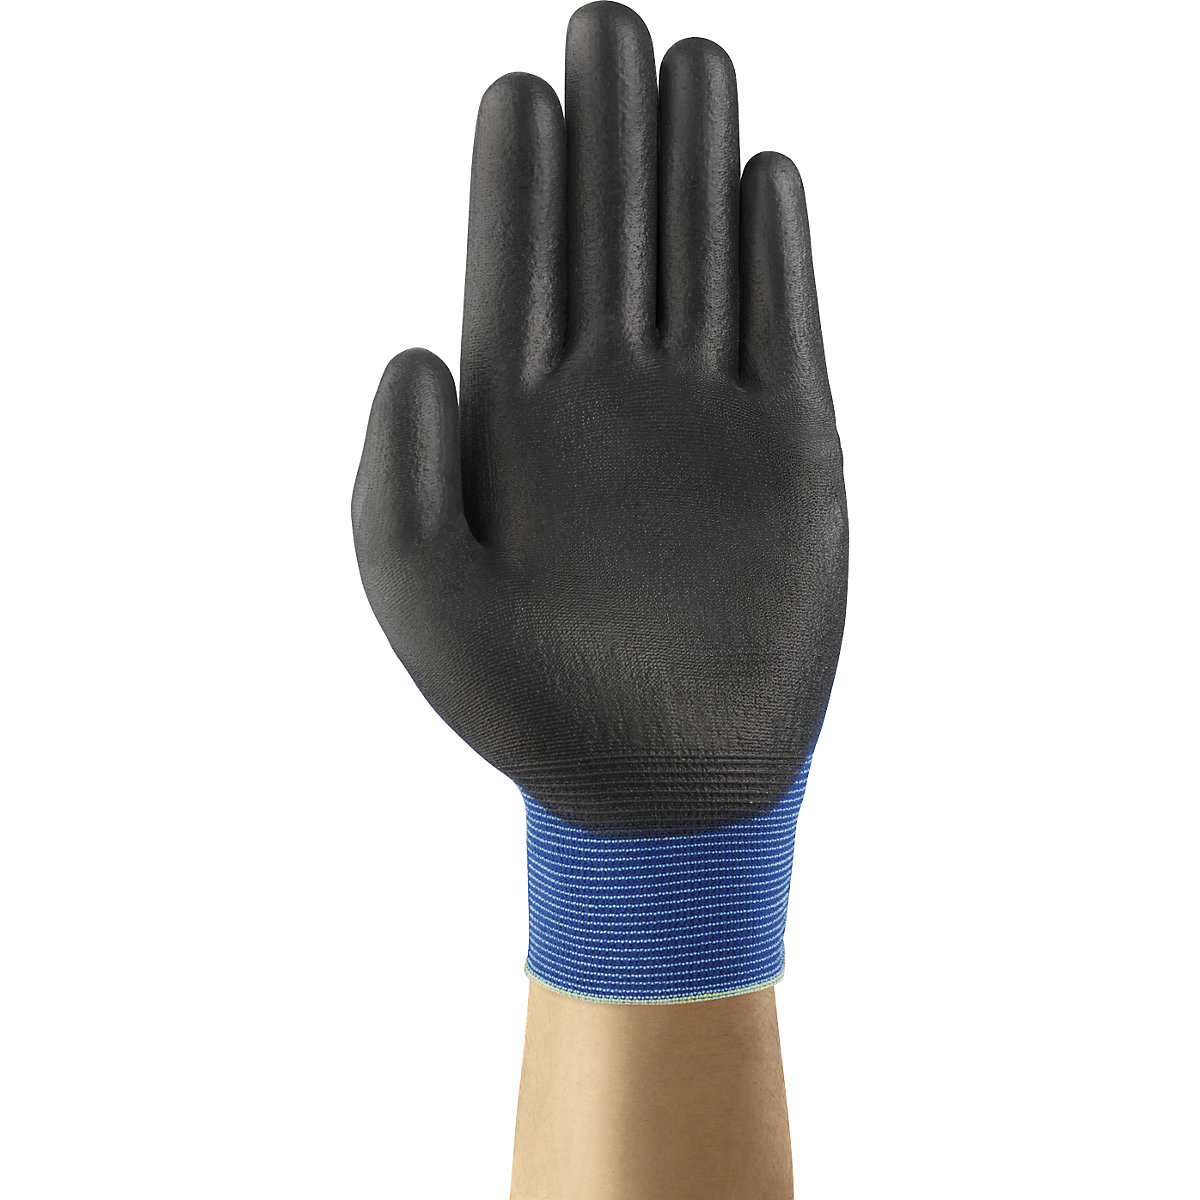 Pracovná rukavica HyFlex® 11-618 – Ansell (Zobrazenie produktu 3)-2